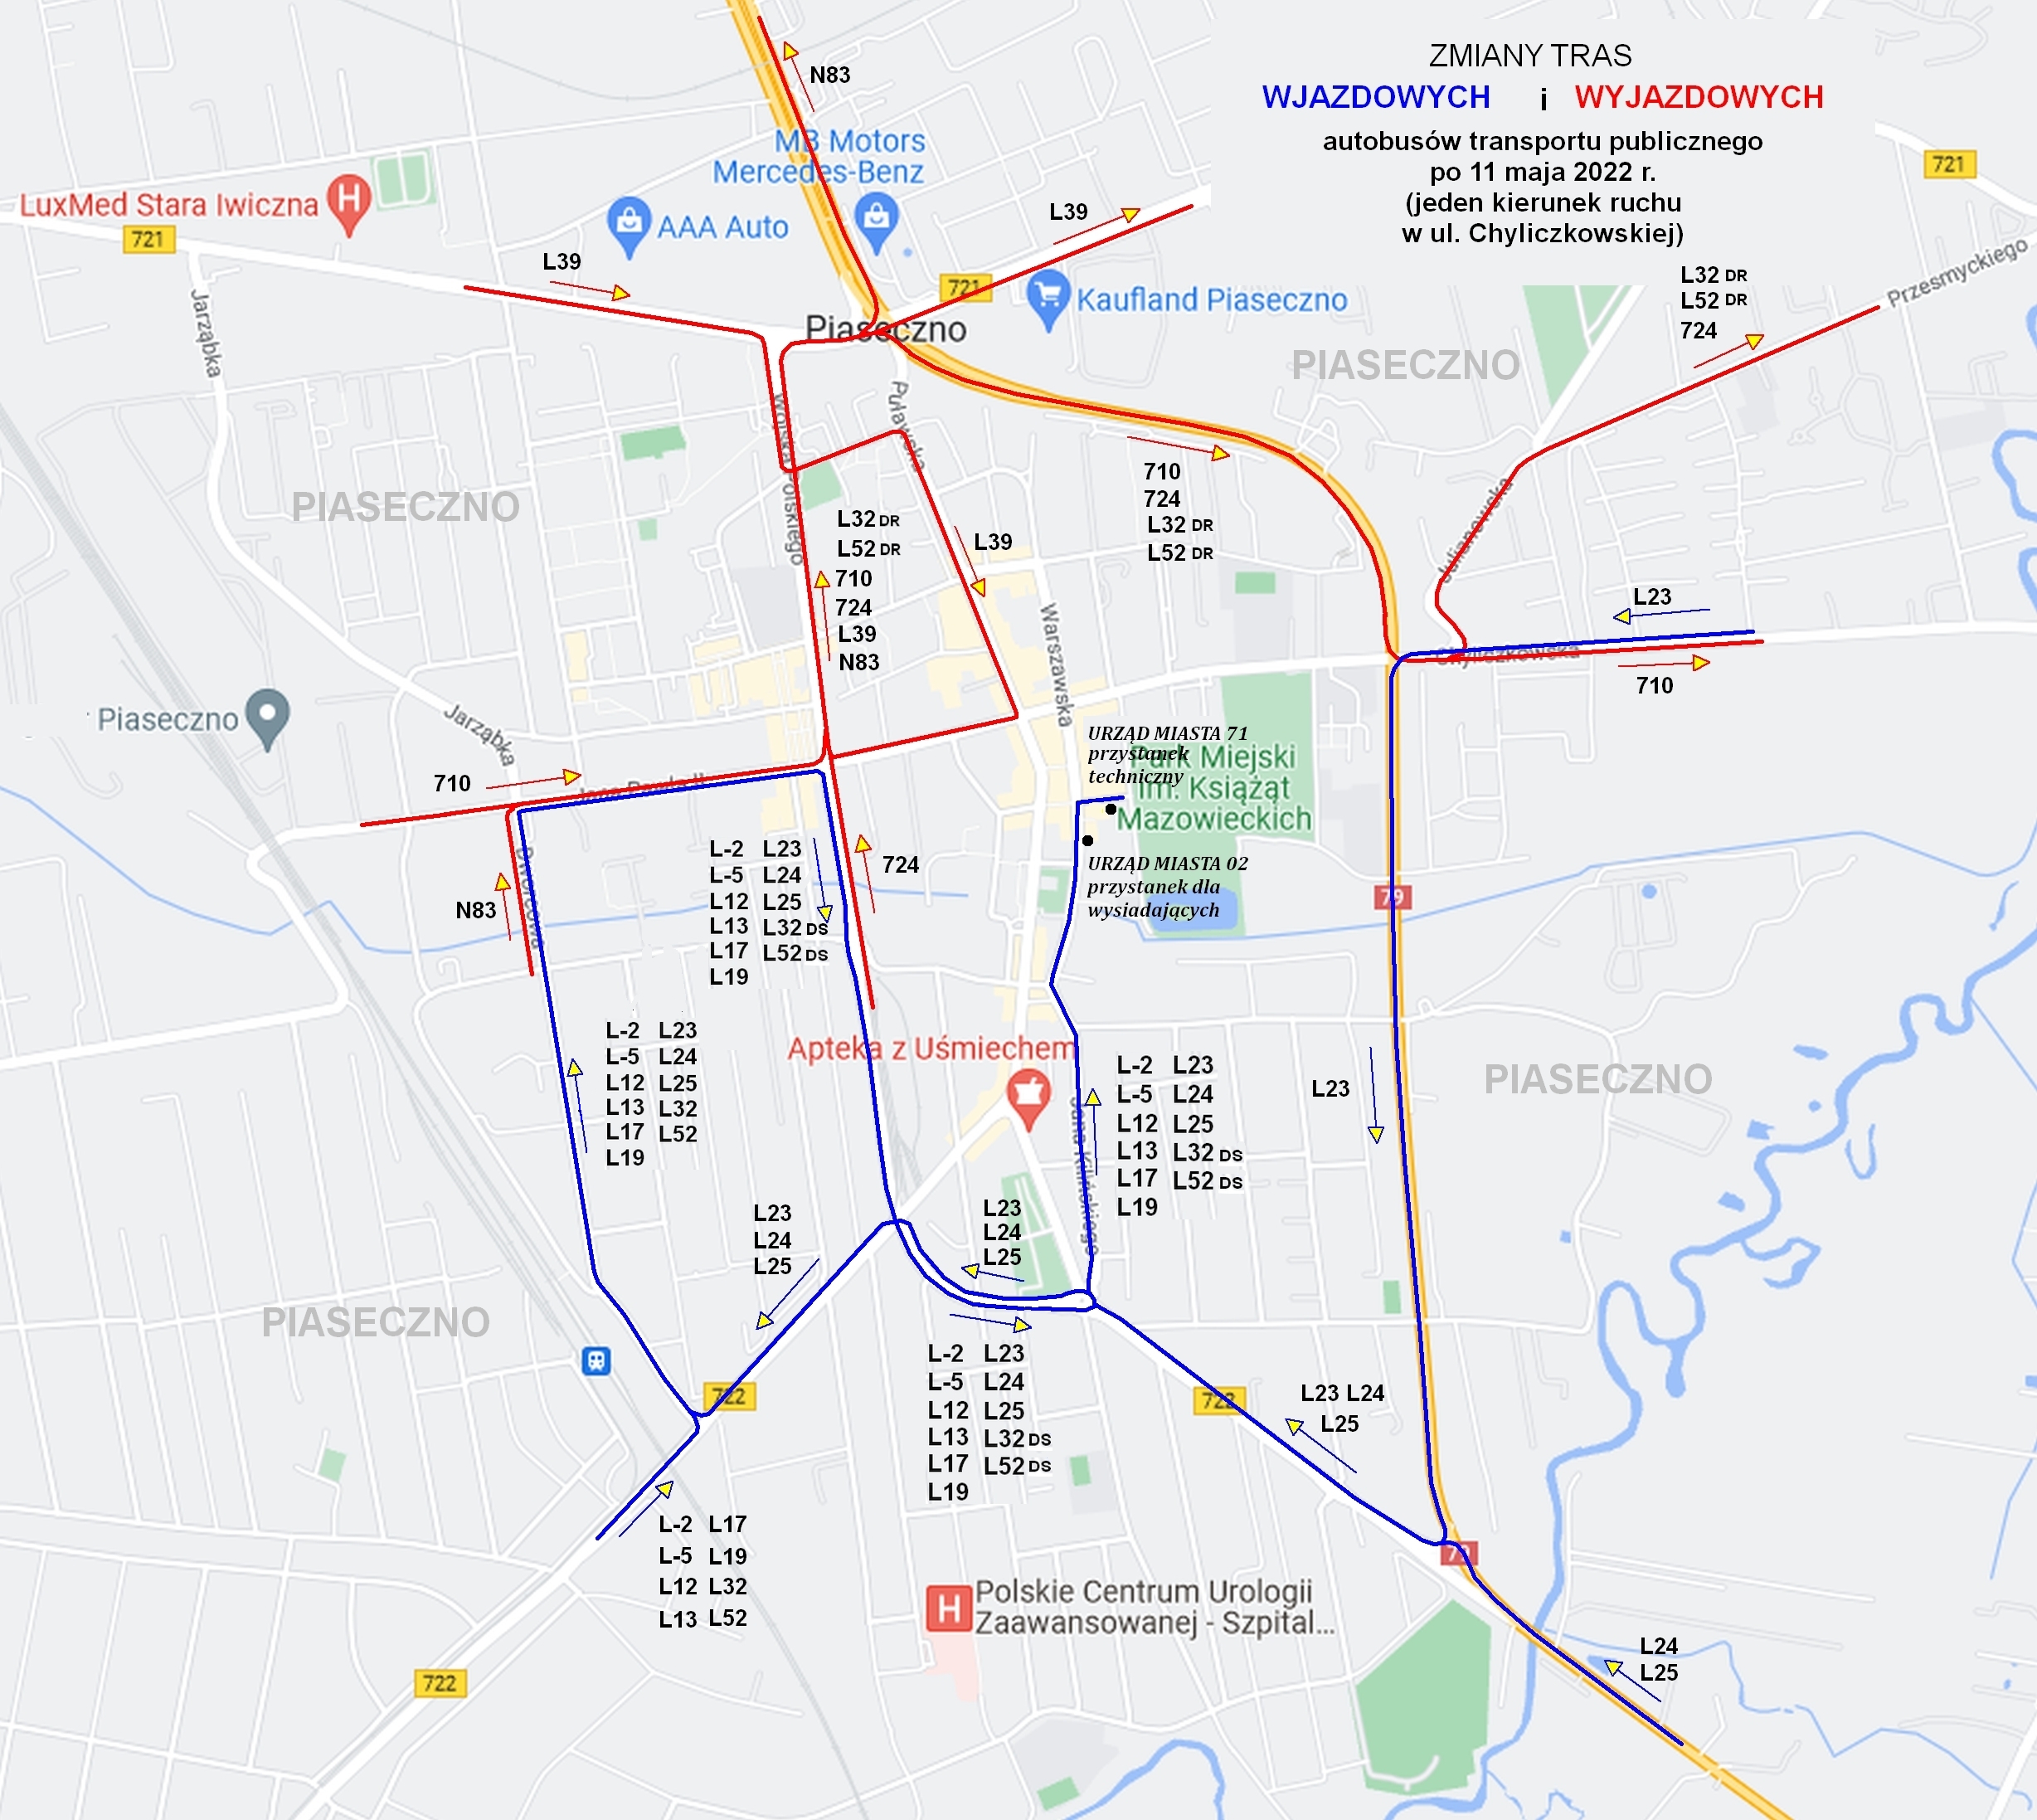 Schemat zmian transportu zbiorowego po wprowadzeniu czasowej organizacji ruchu w Chyliczkowskiej, który obowiązuje od 11 maja. Trasy pozostałych linii nie ulegają zmianom.